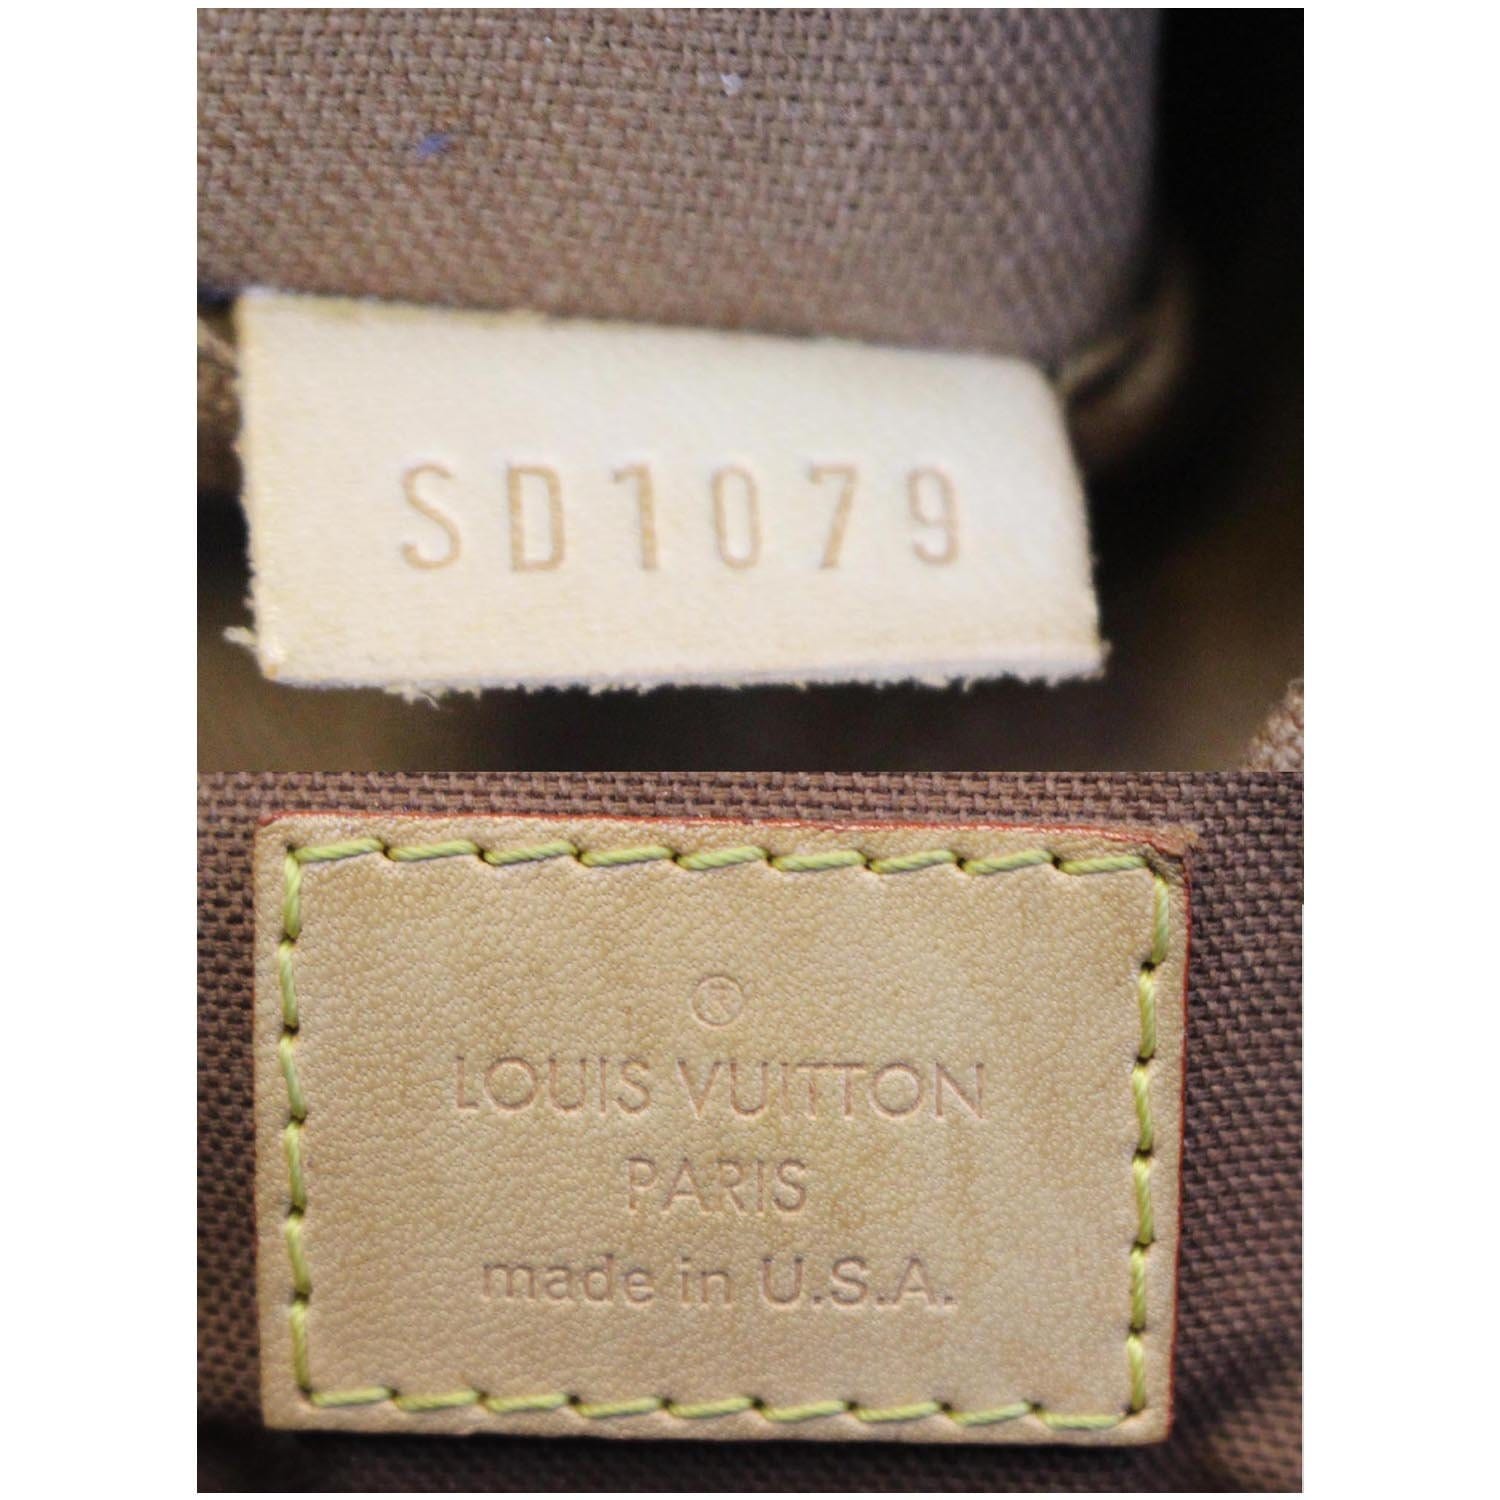 Louis Vuitton Monogram Tivoli PM – The Don's Luxury Goods